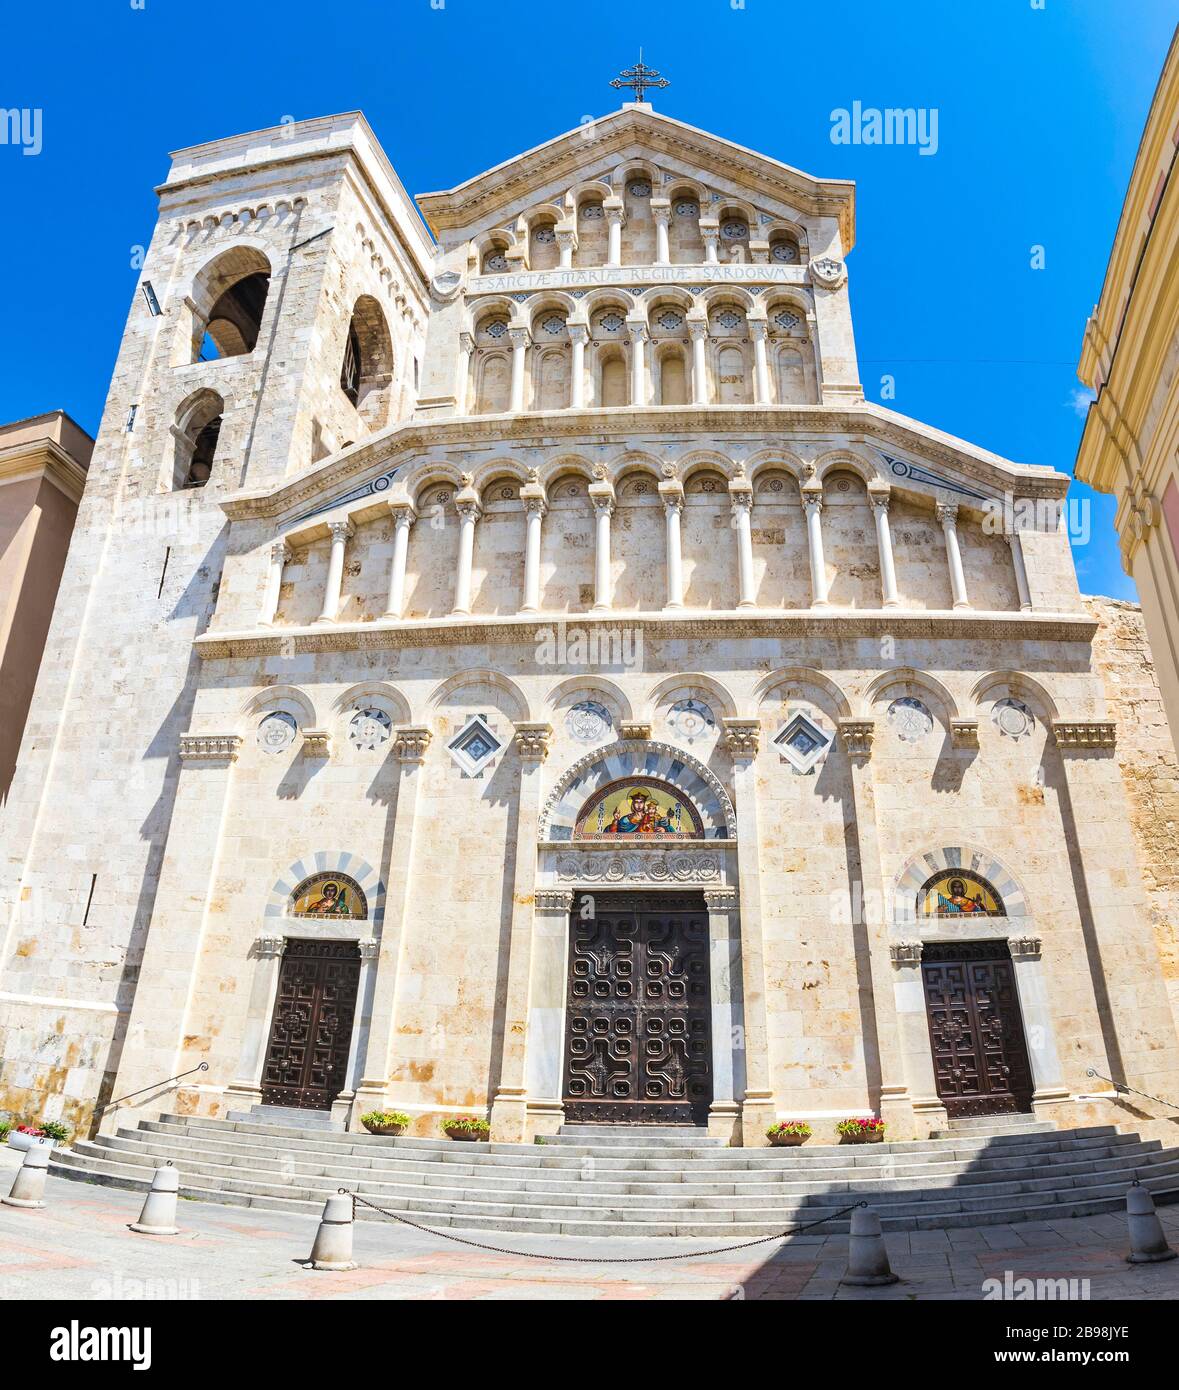 Building of Cagliari Cathedral (Cattedrale di Cagliari), Cagliari city, Sardinia island, Italy Stock Photo